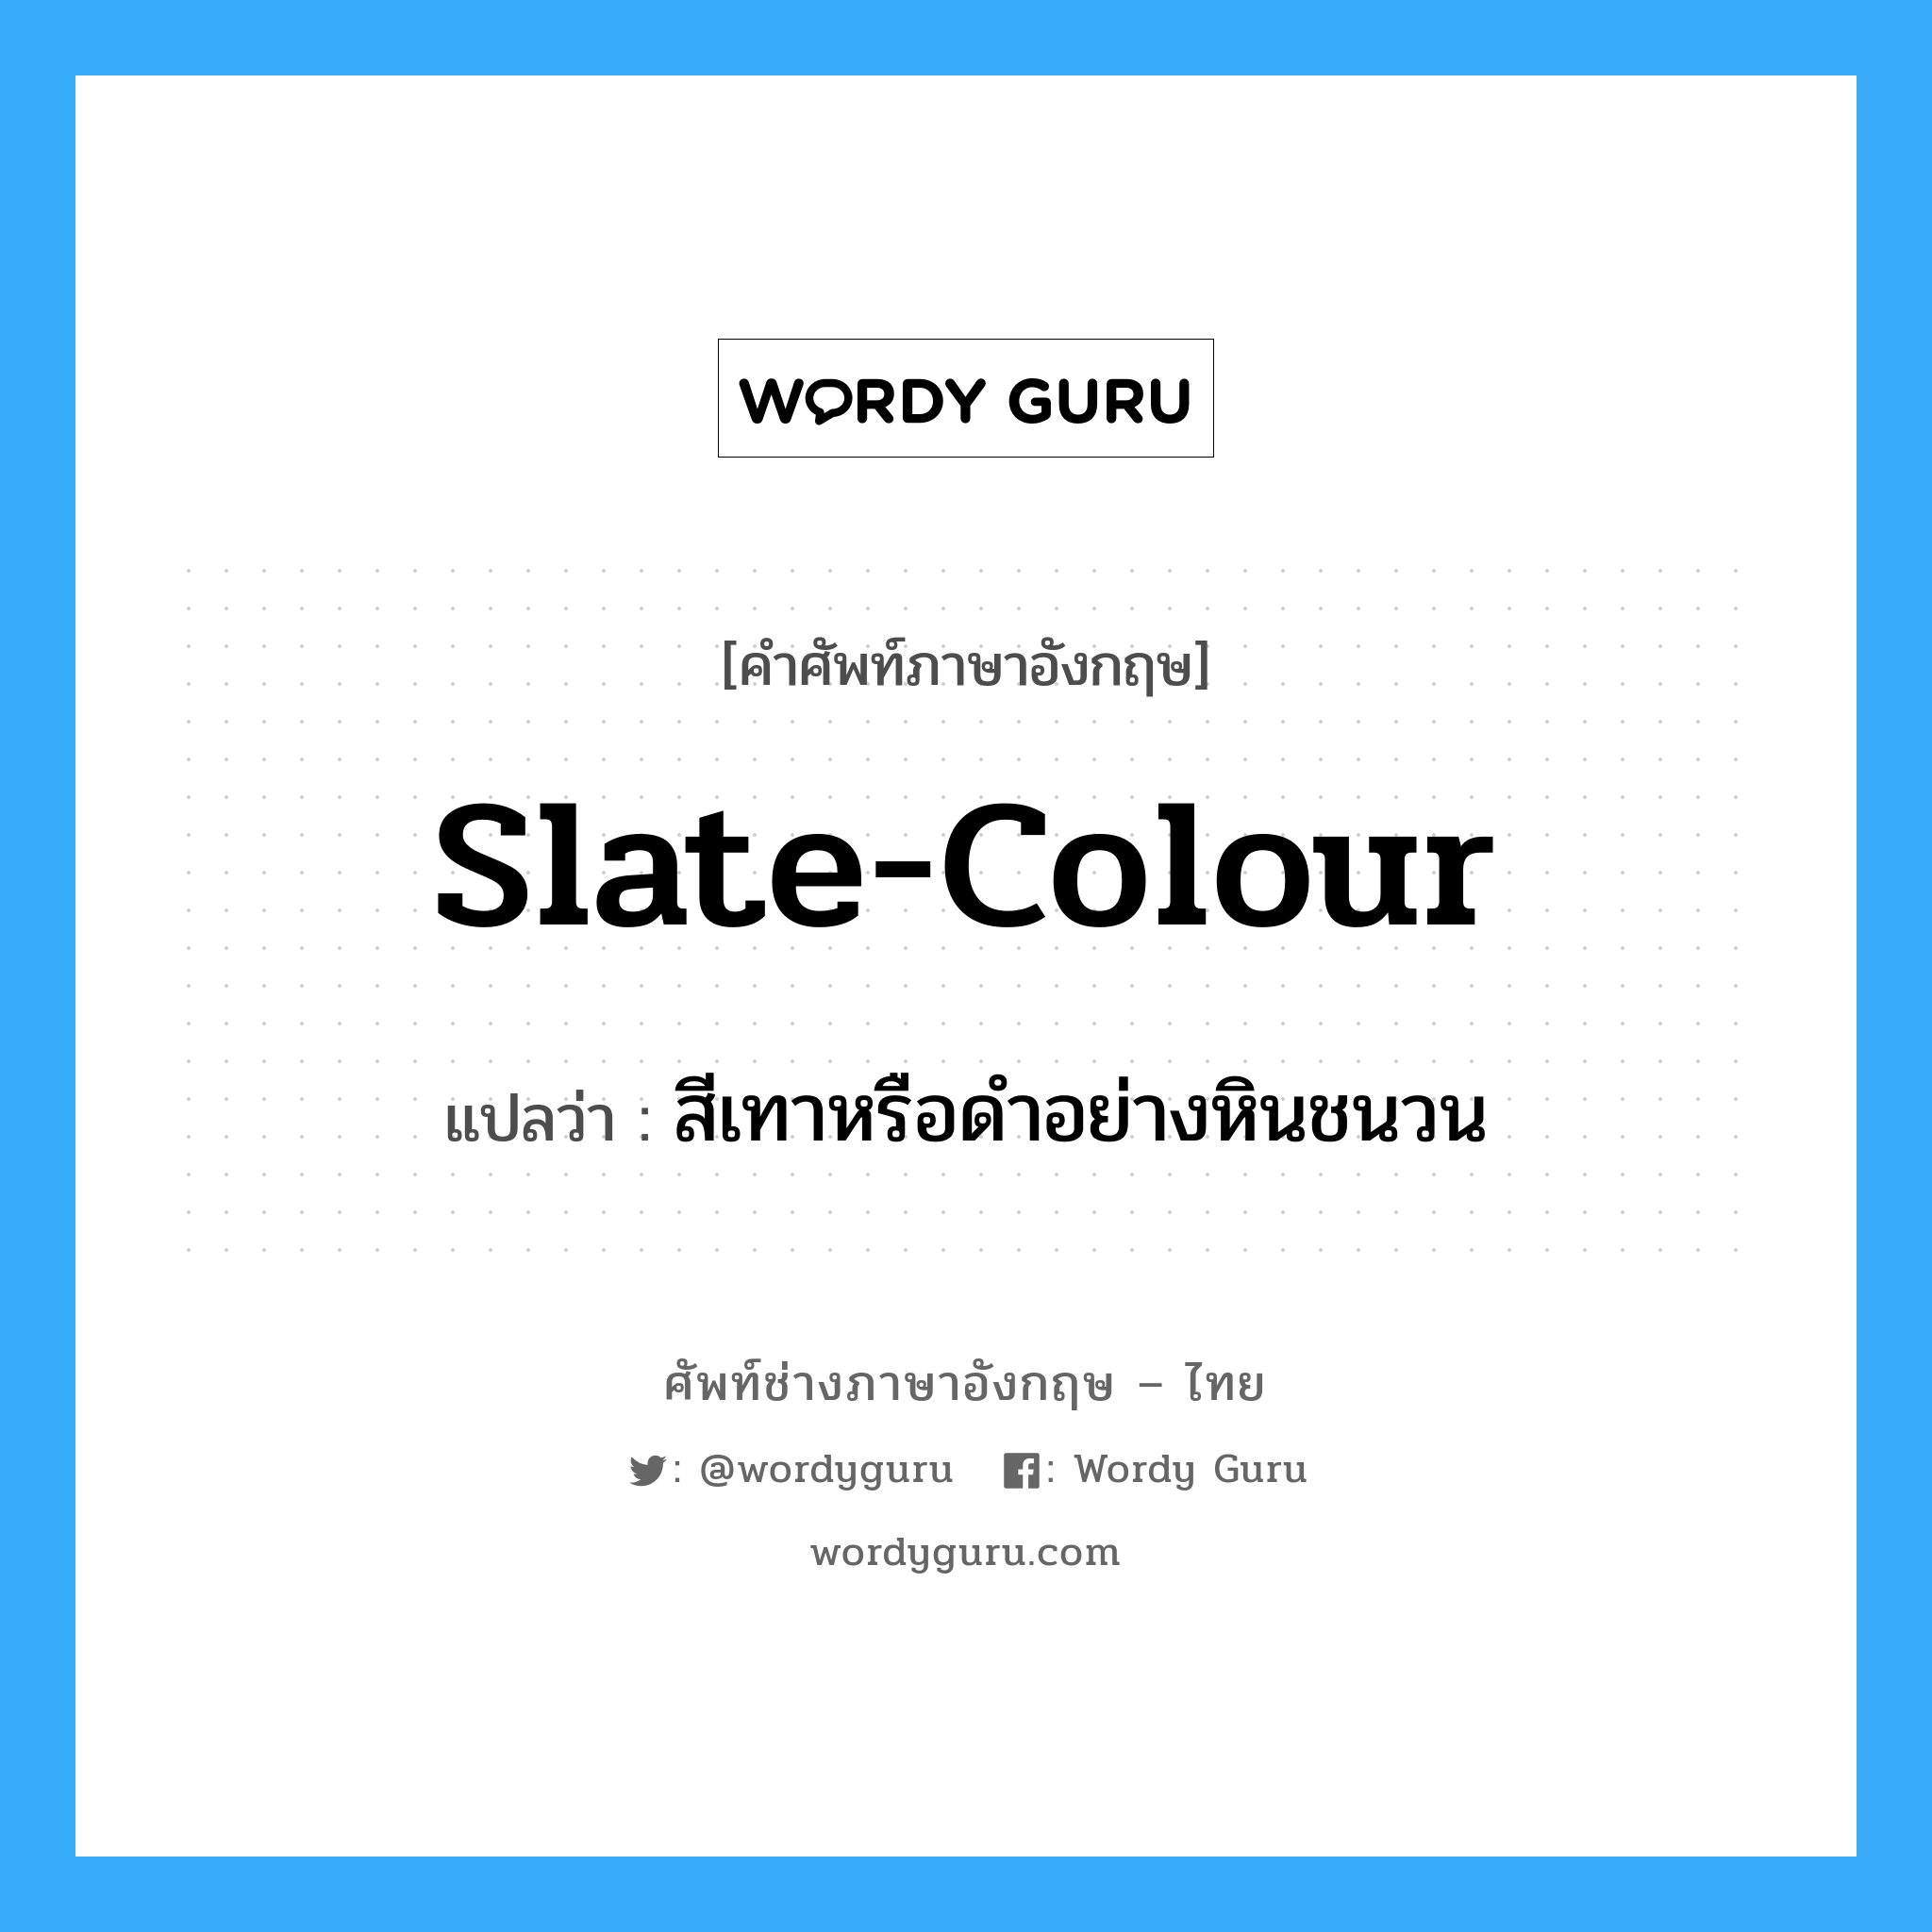 slate-colour แปลว่า?, คำศัพท์ช่างภาษาอังกฤษ - ไทย slate-colour คำศัพท์ภาษาอังกฤษ slate-colour แปลว่า สีเทาหรือดำอย่างหินชนวน